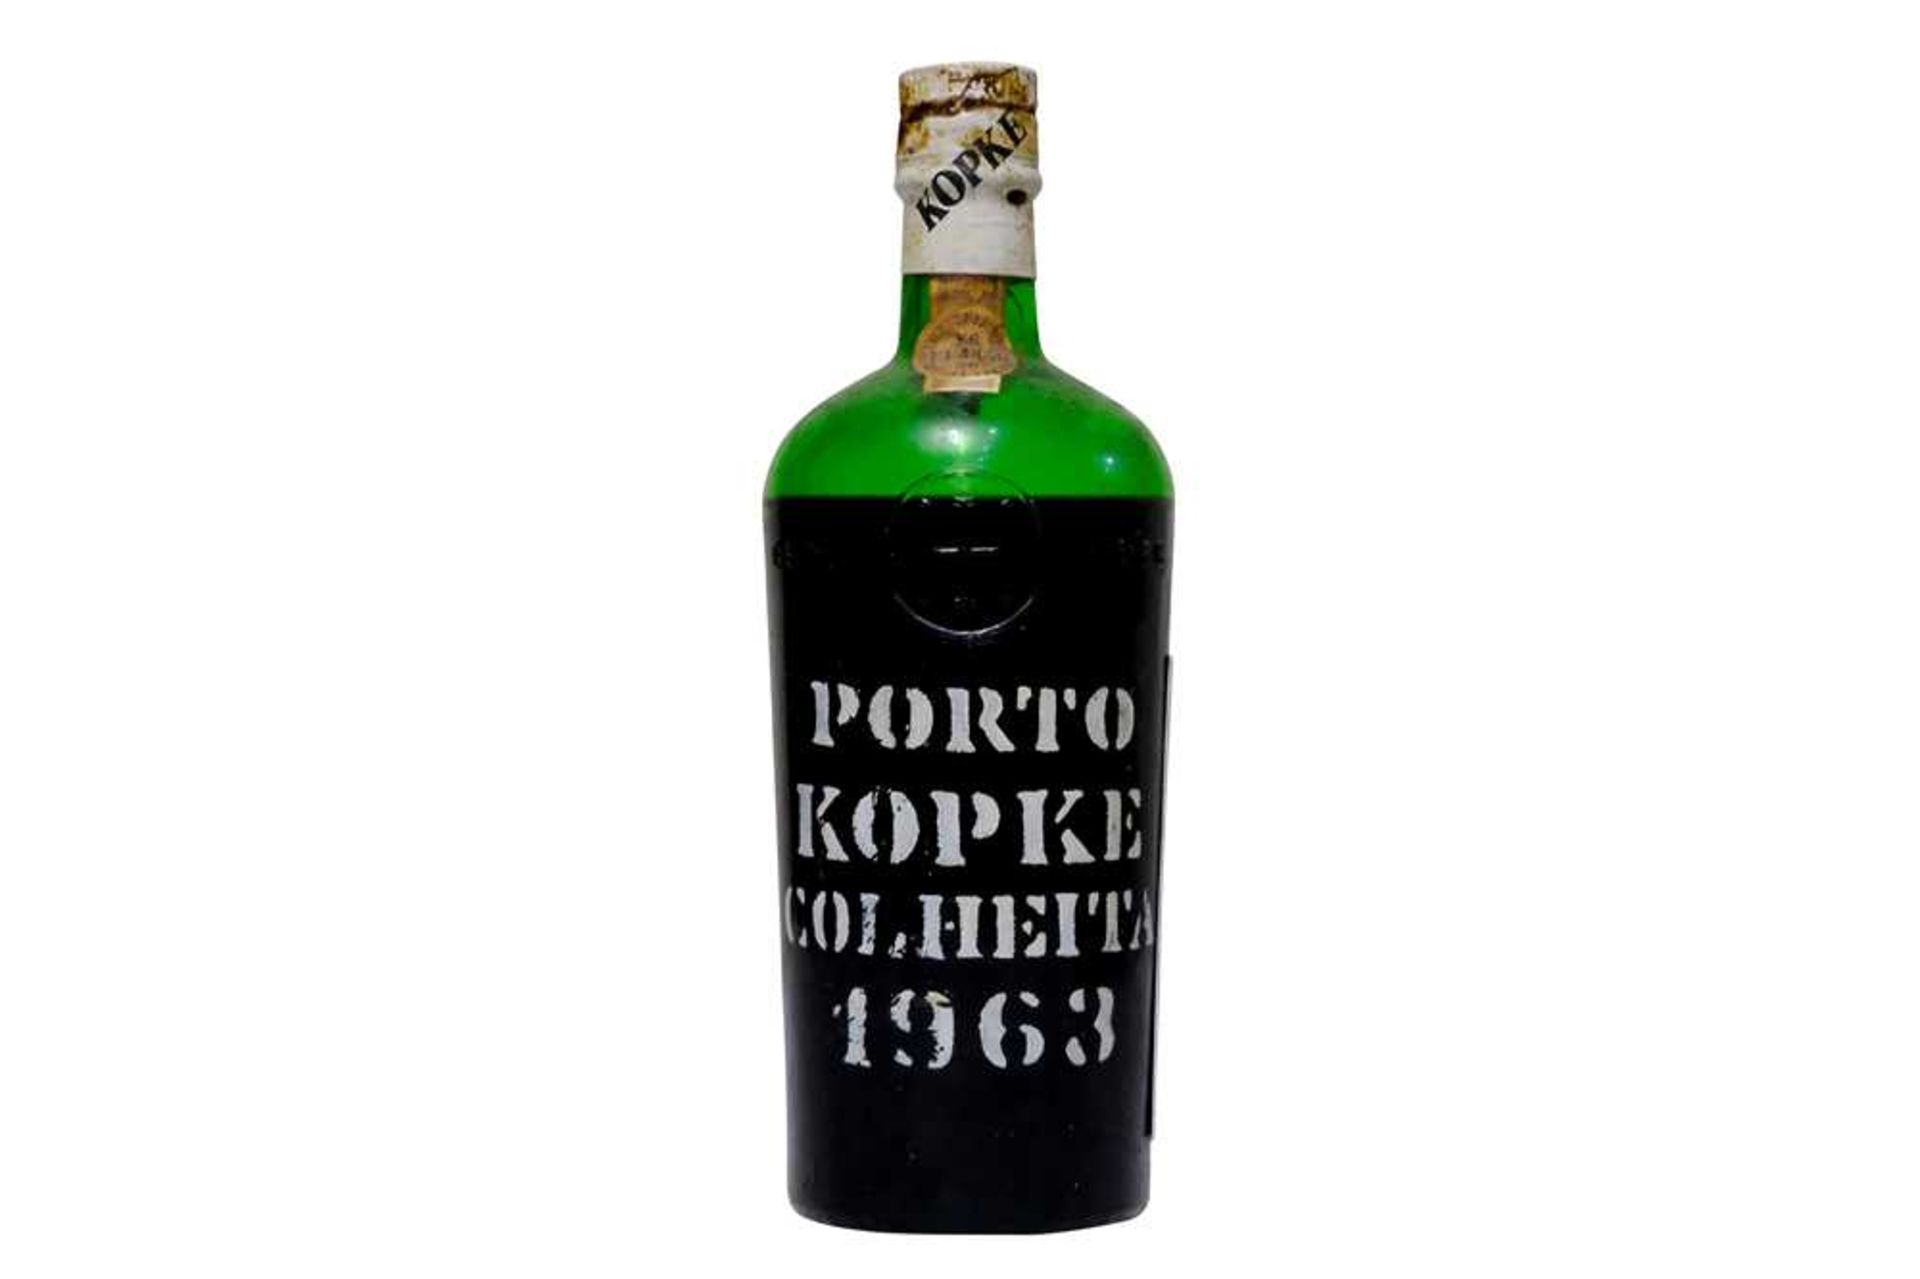 Kopke, Colheita Port, 1963, one bottle